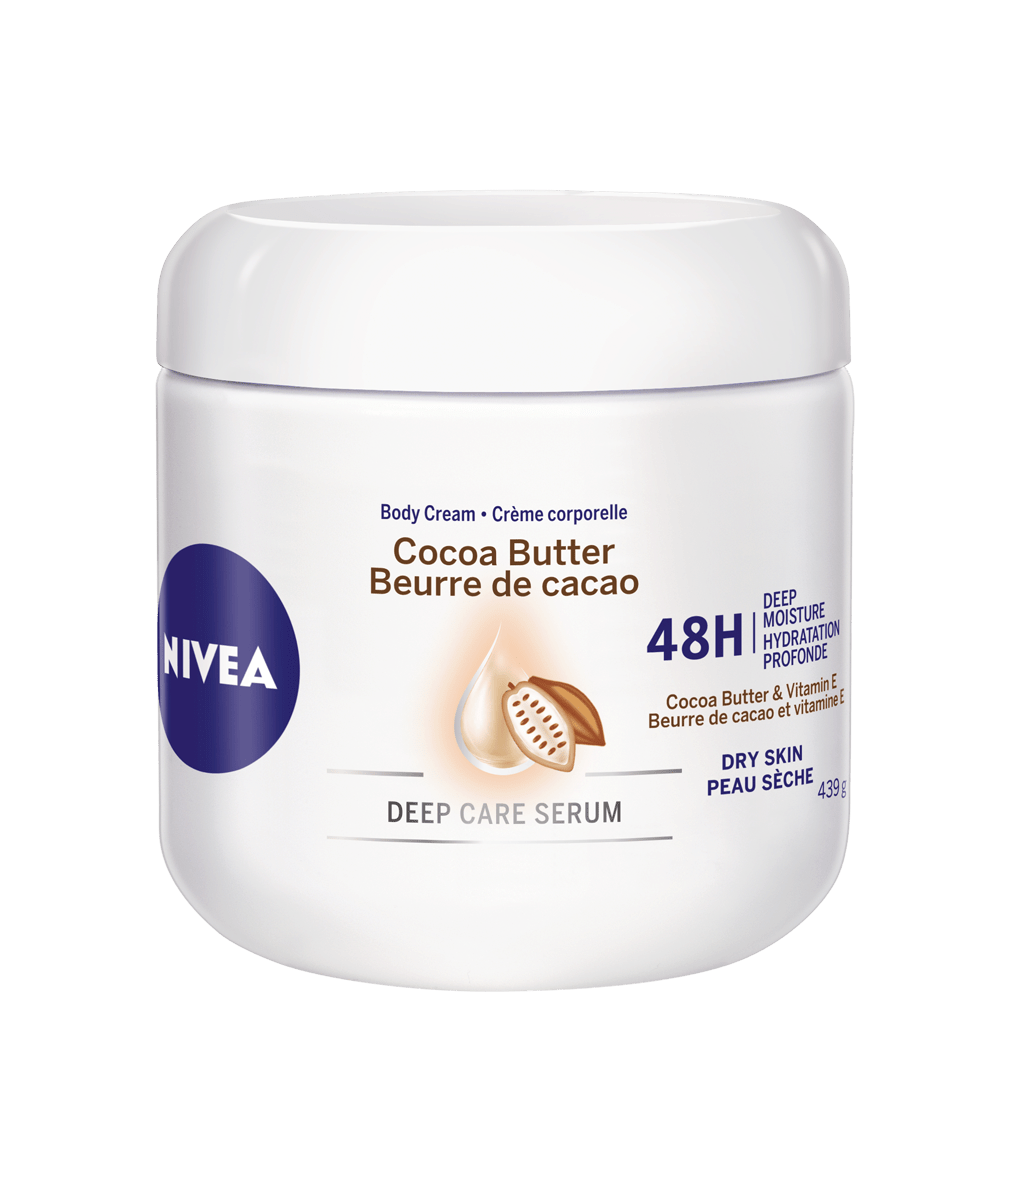 NIVEA Cocoa Butter Body Cream 48H Deep Moisture